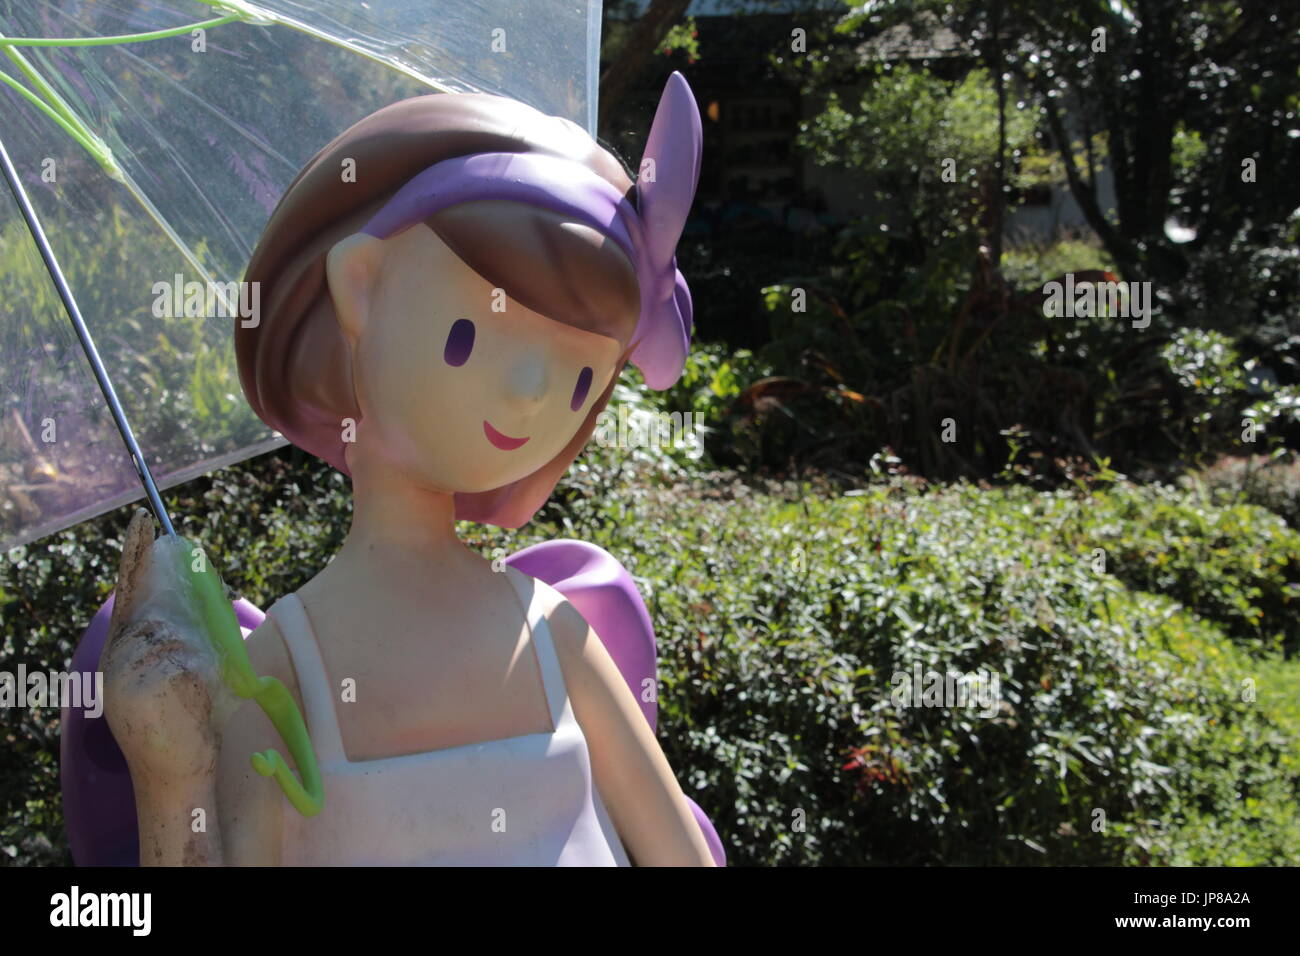 Ragazza bambola holding ombrello trasparente in posa per gli scatti Foto Stock